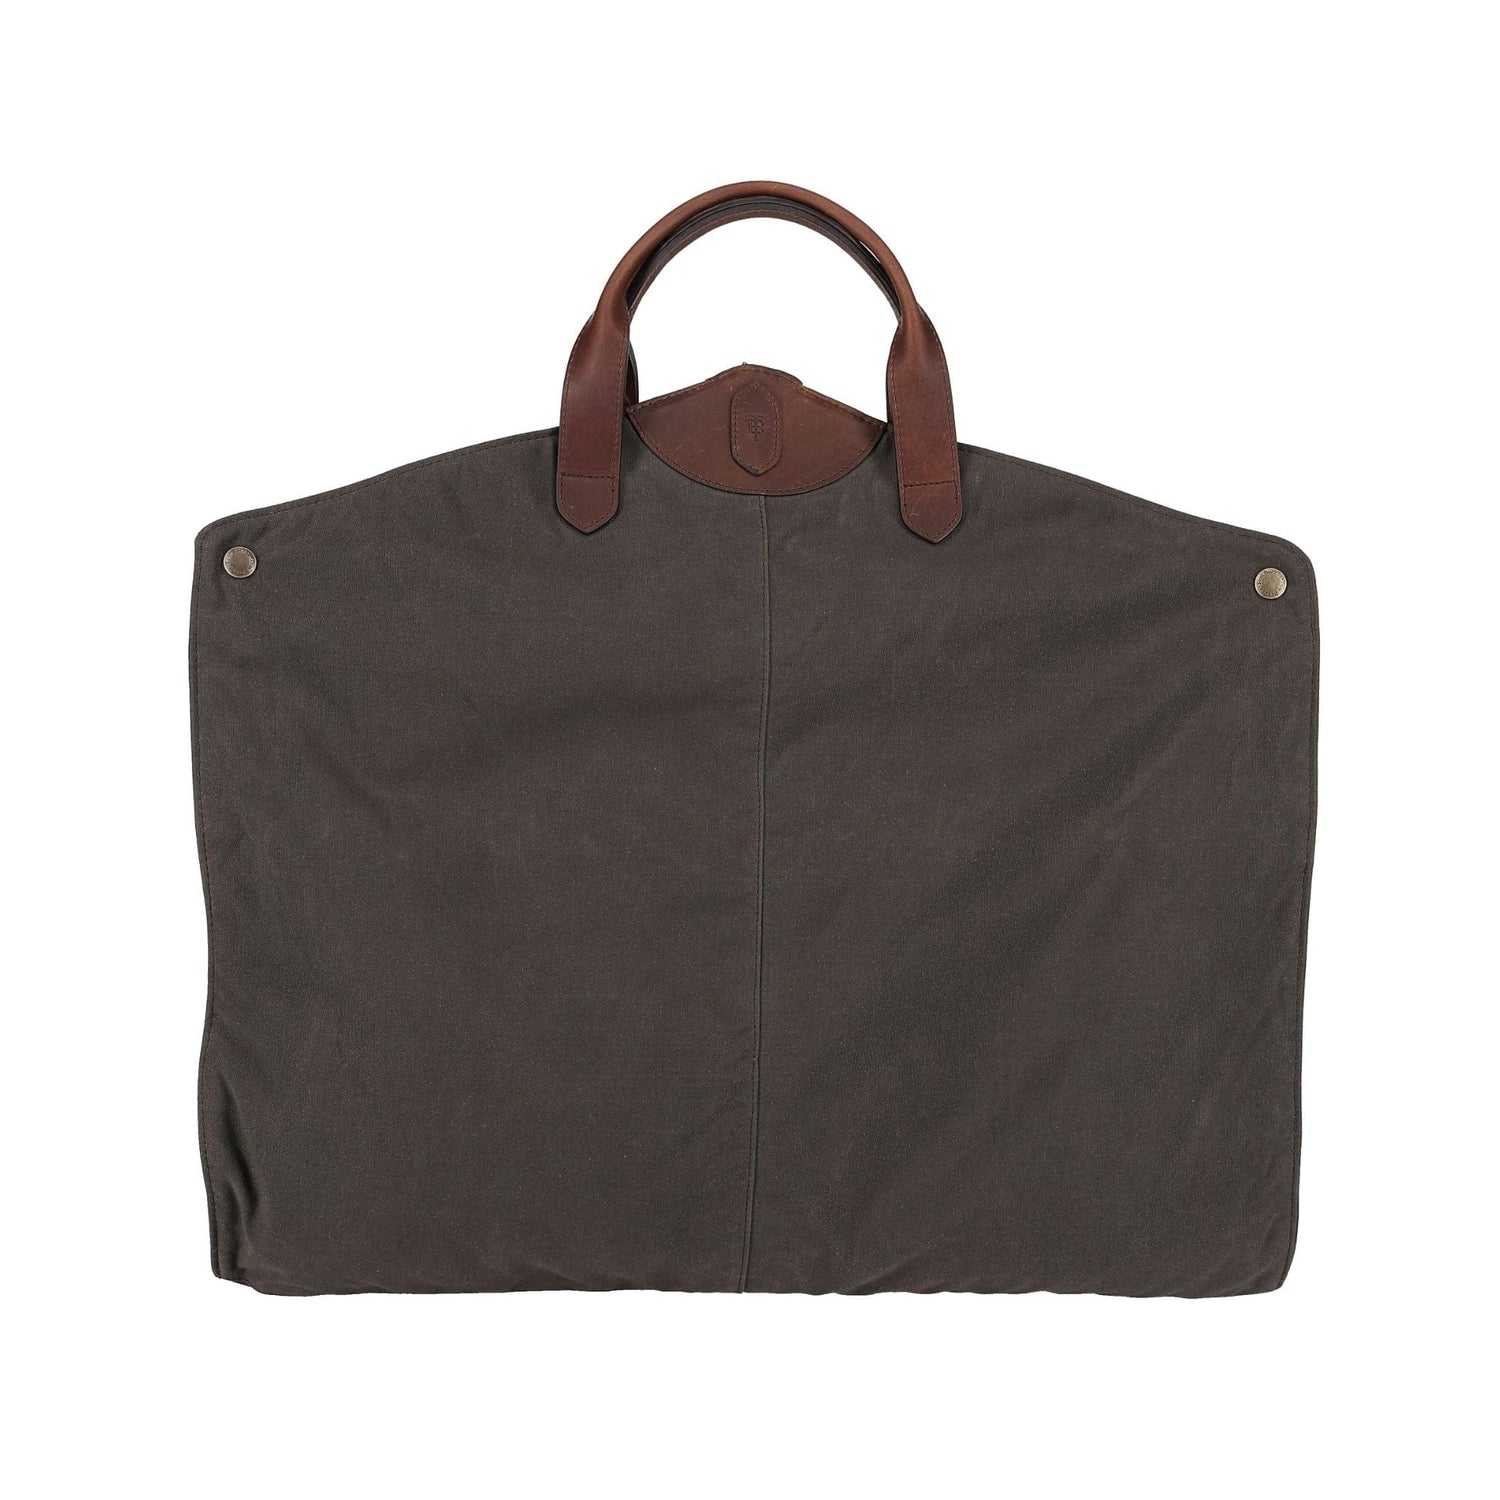 Wax Canvas Travel Garment Bag